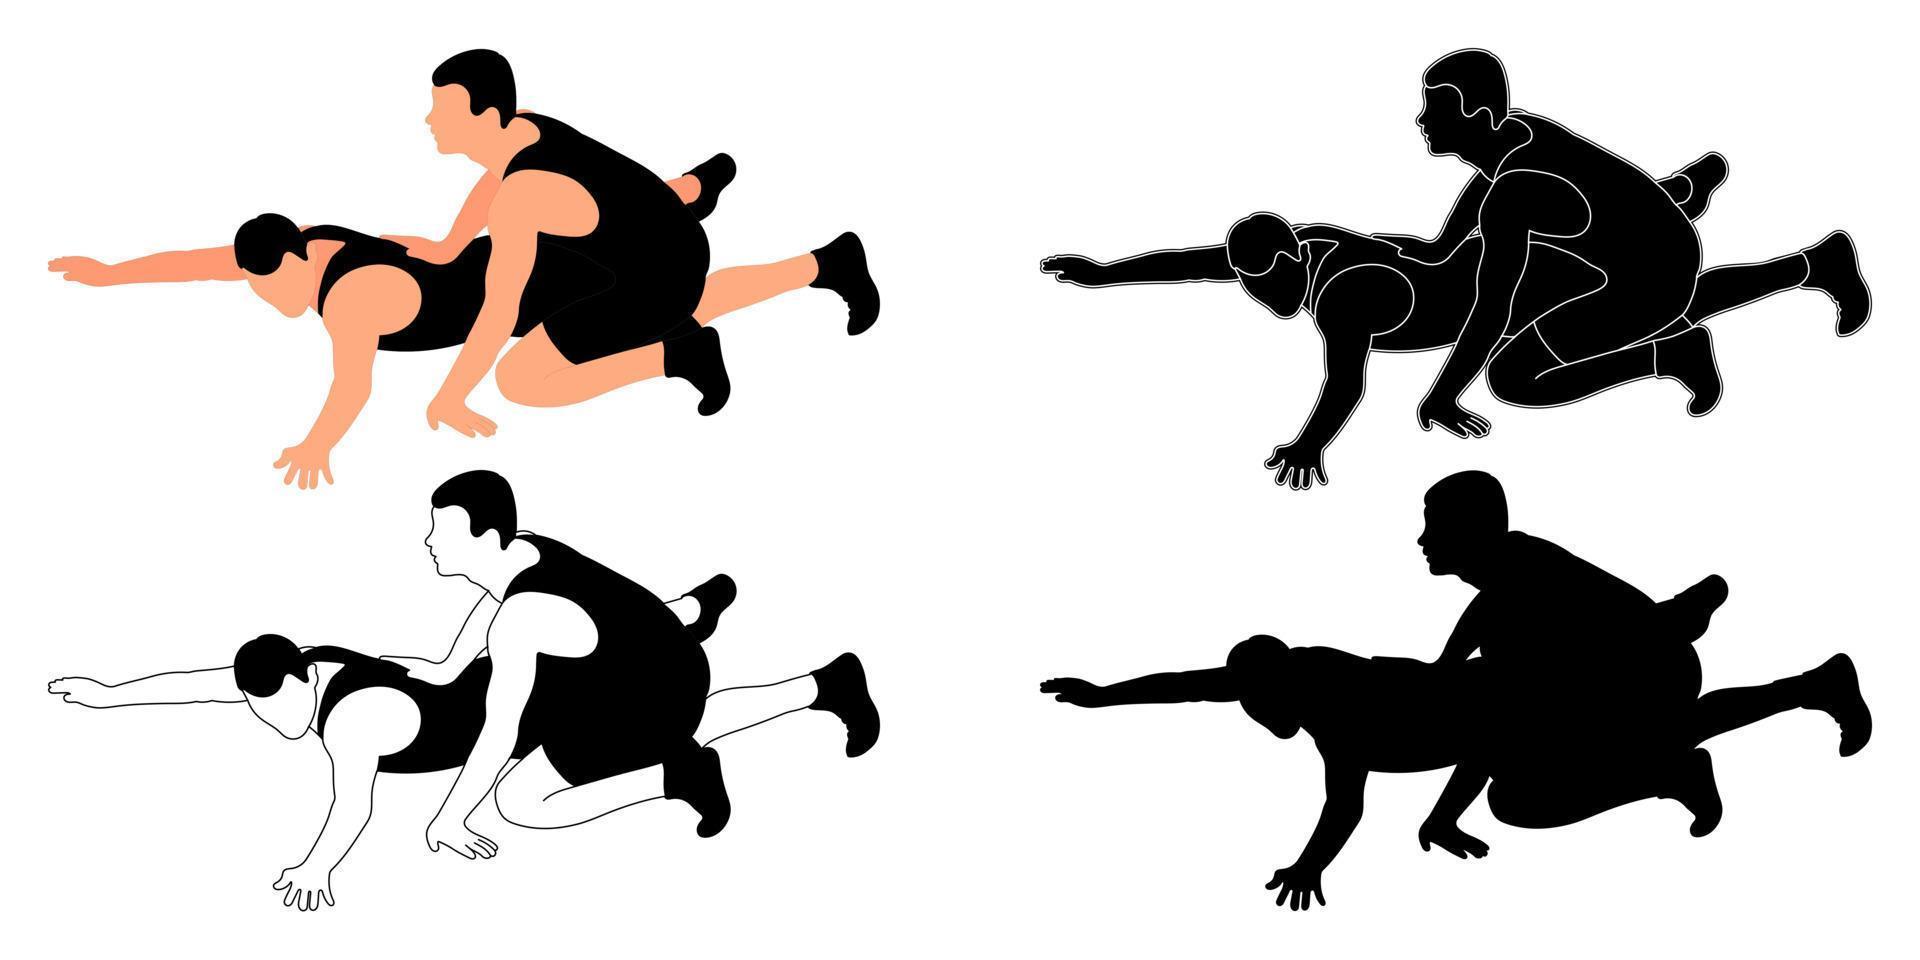 uppsättning silhuetter idrottare brottare i brottning, duell, bekämpa. greco roman, freestyle, klassisk brottning. krigisk konst vektor